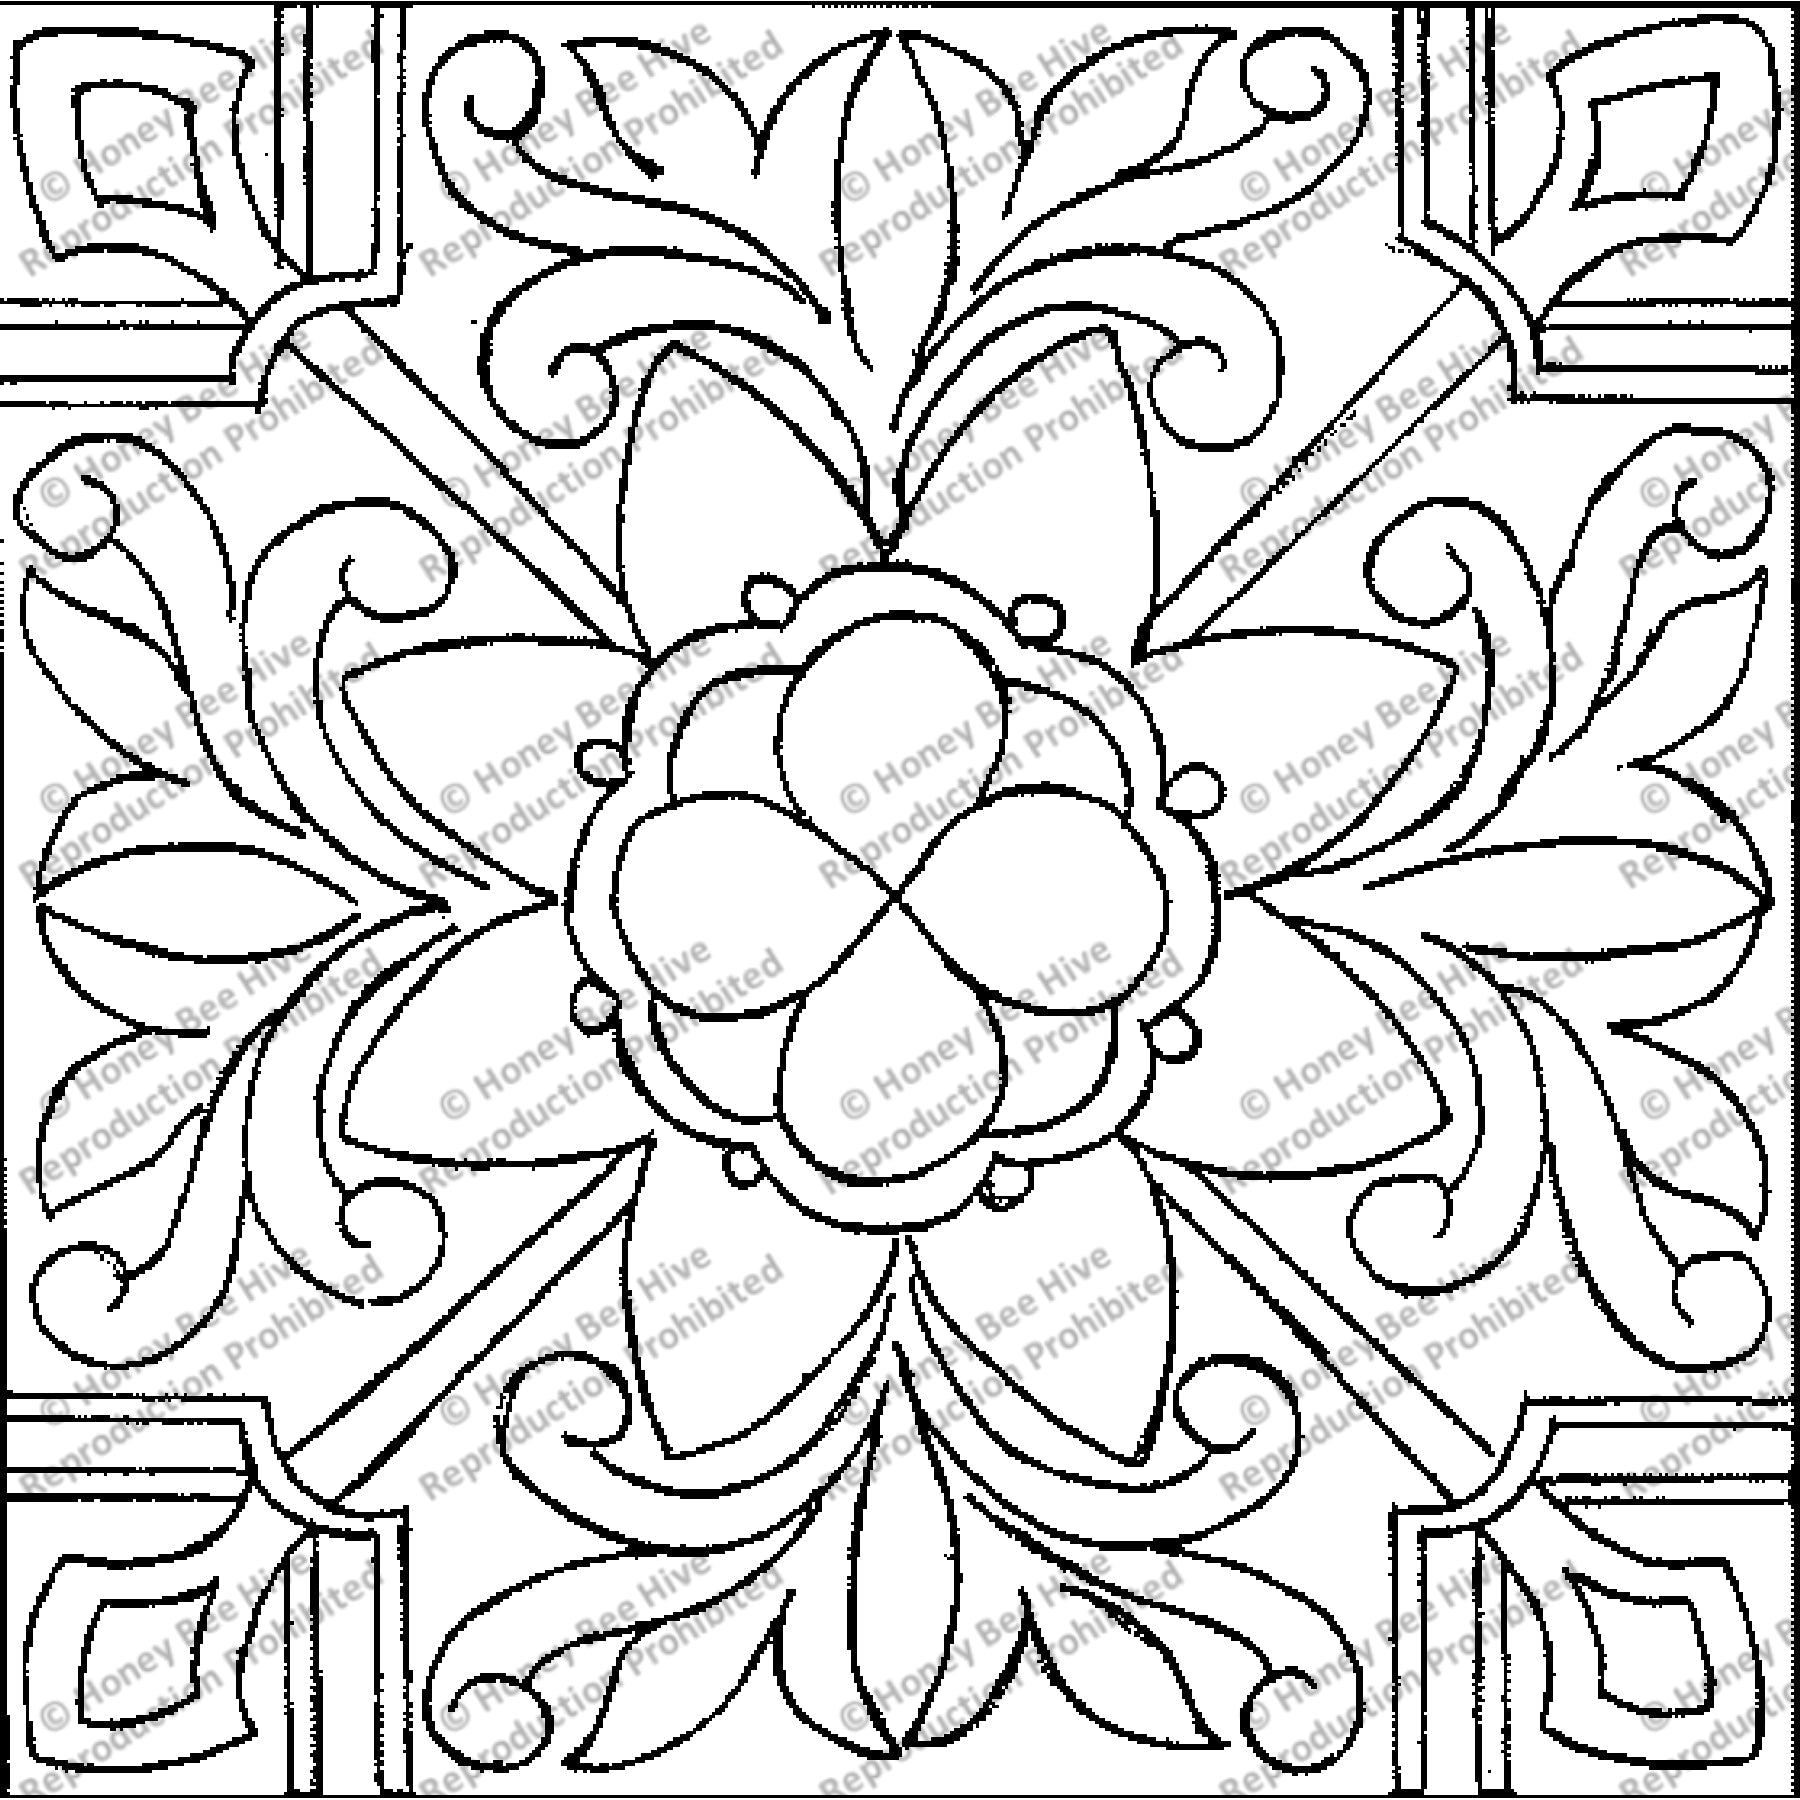 St. Augustine, rug hooking pattern